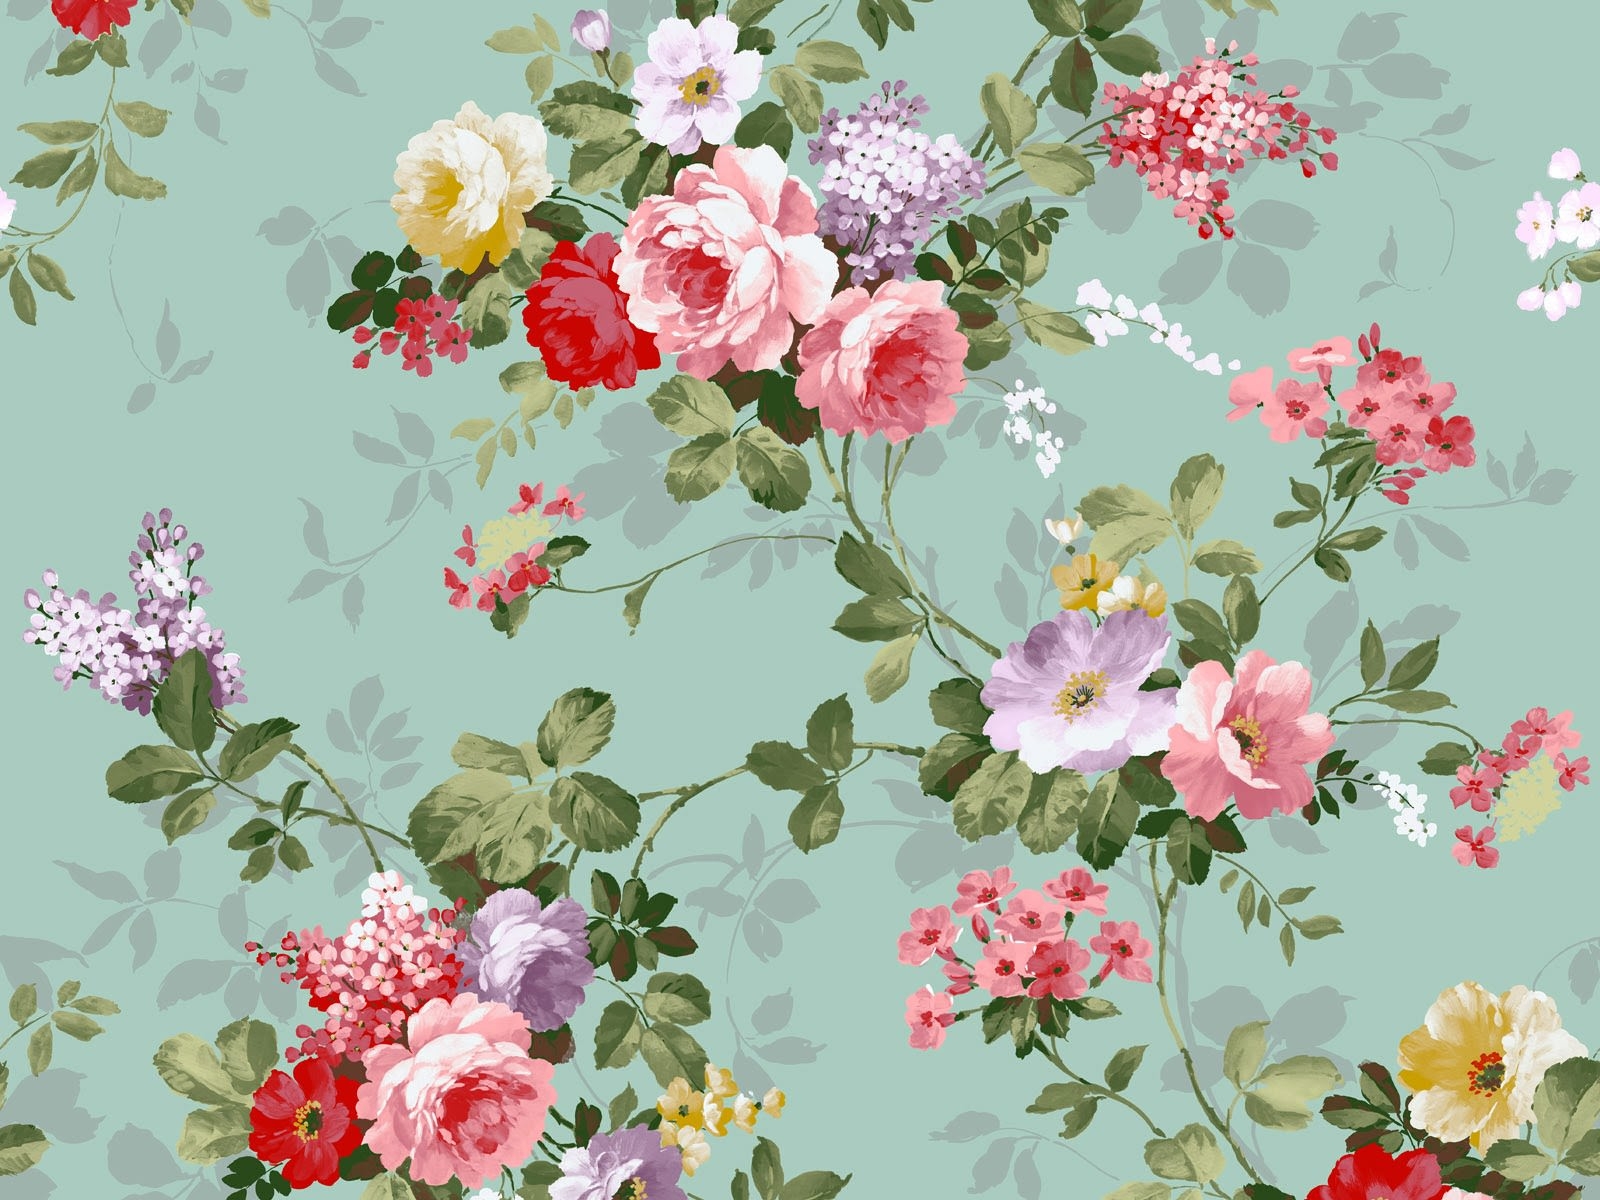 floral wallpaper,flower,floral design,prickly rose,plant,pink